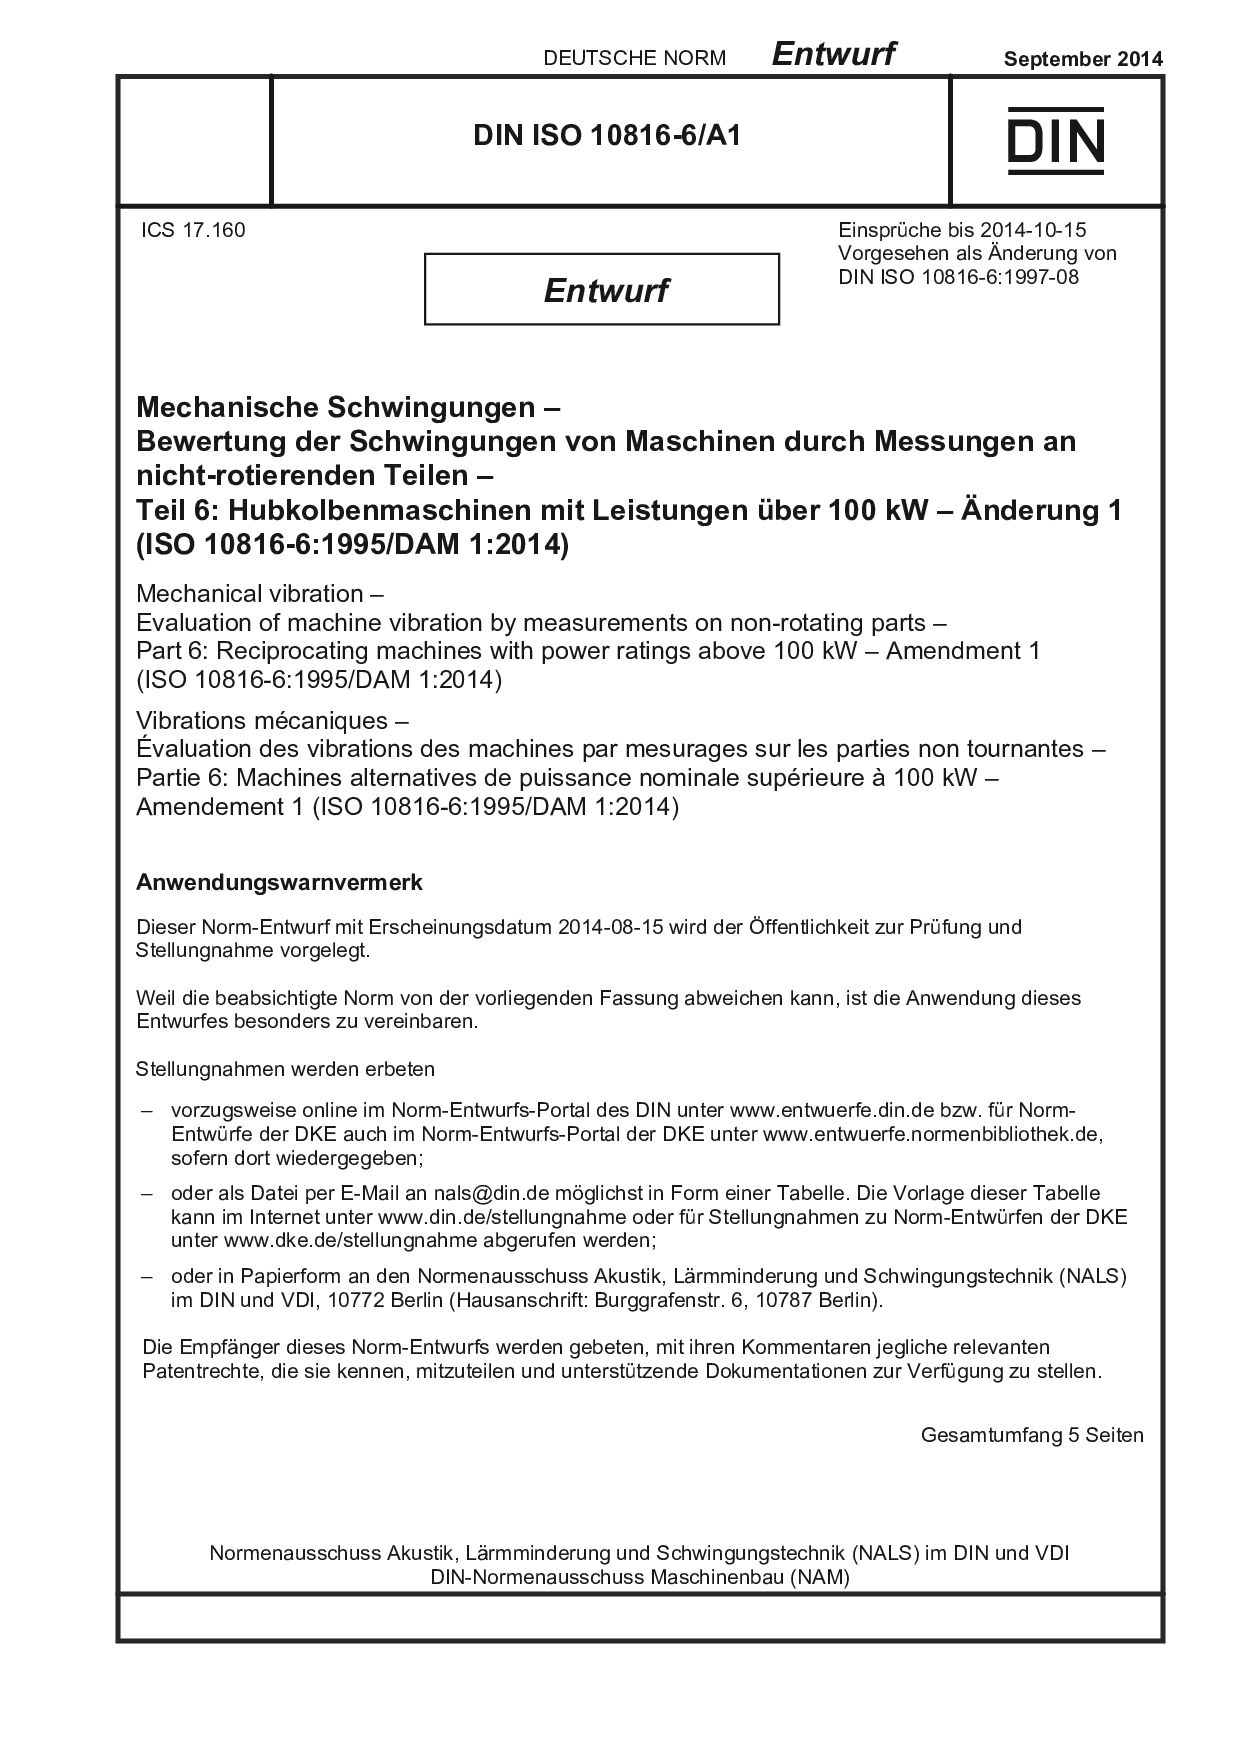 DIN ISO 10816-6 A1 E:2014-09